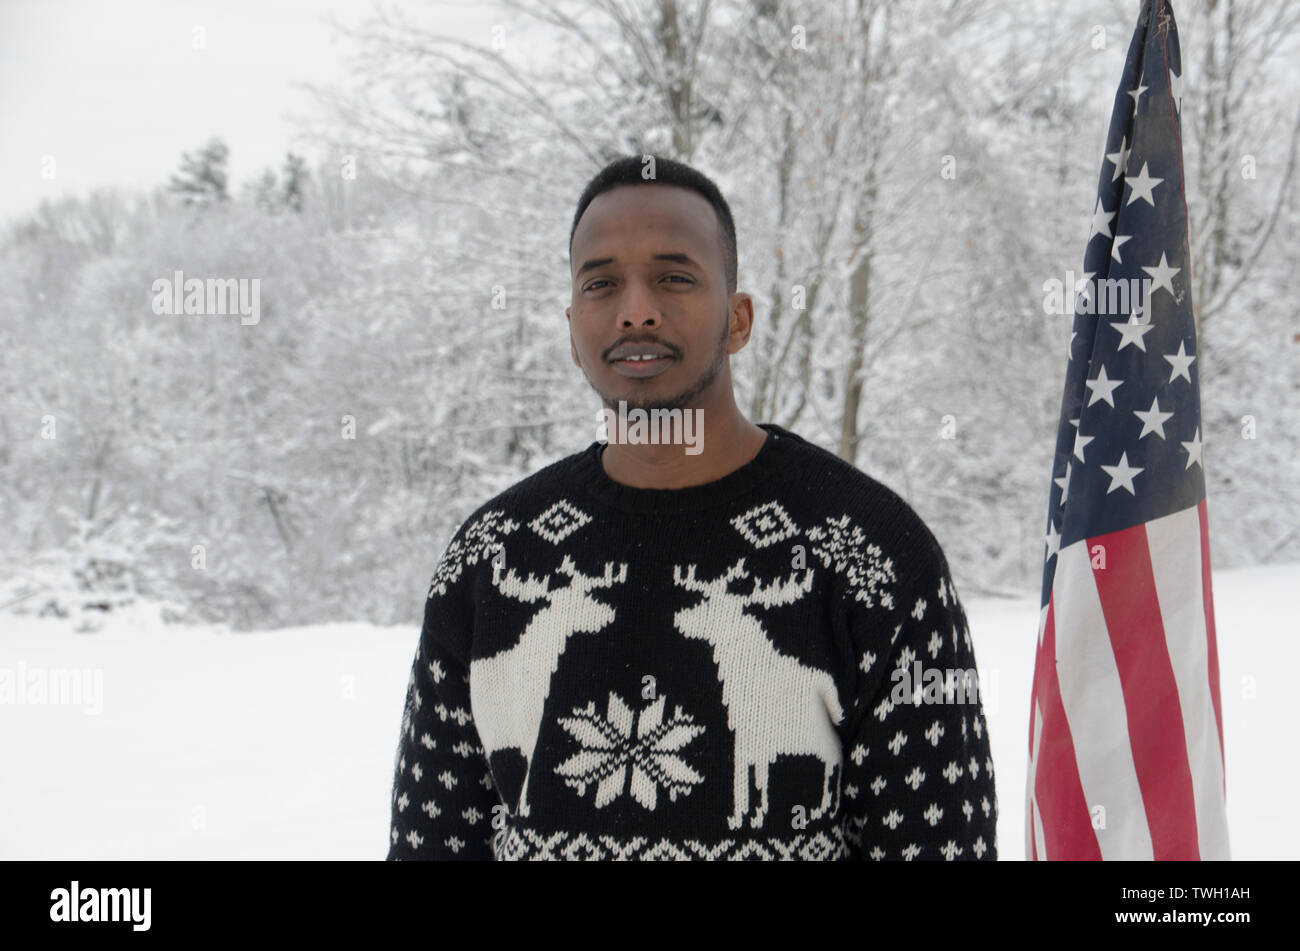 Immigrants somaliens et auteur, Abdi Nur Iftin, standing in snowy field avec le drapeau américain, Yarmouth Maine Banque D'Images